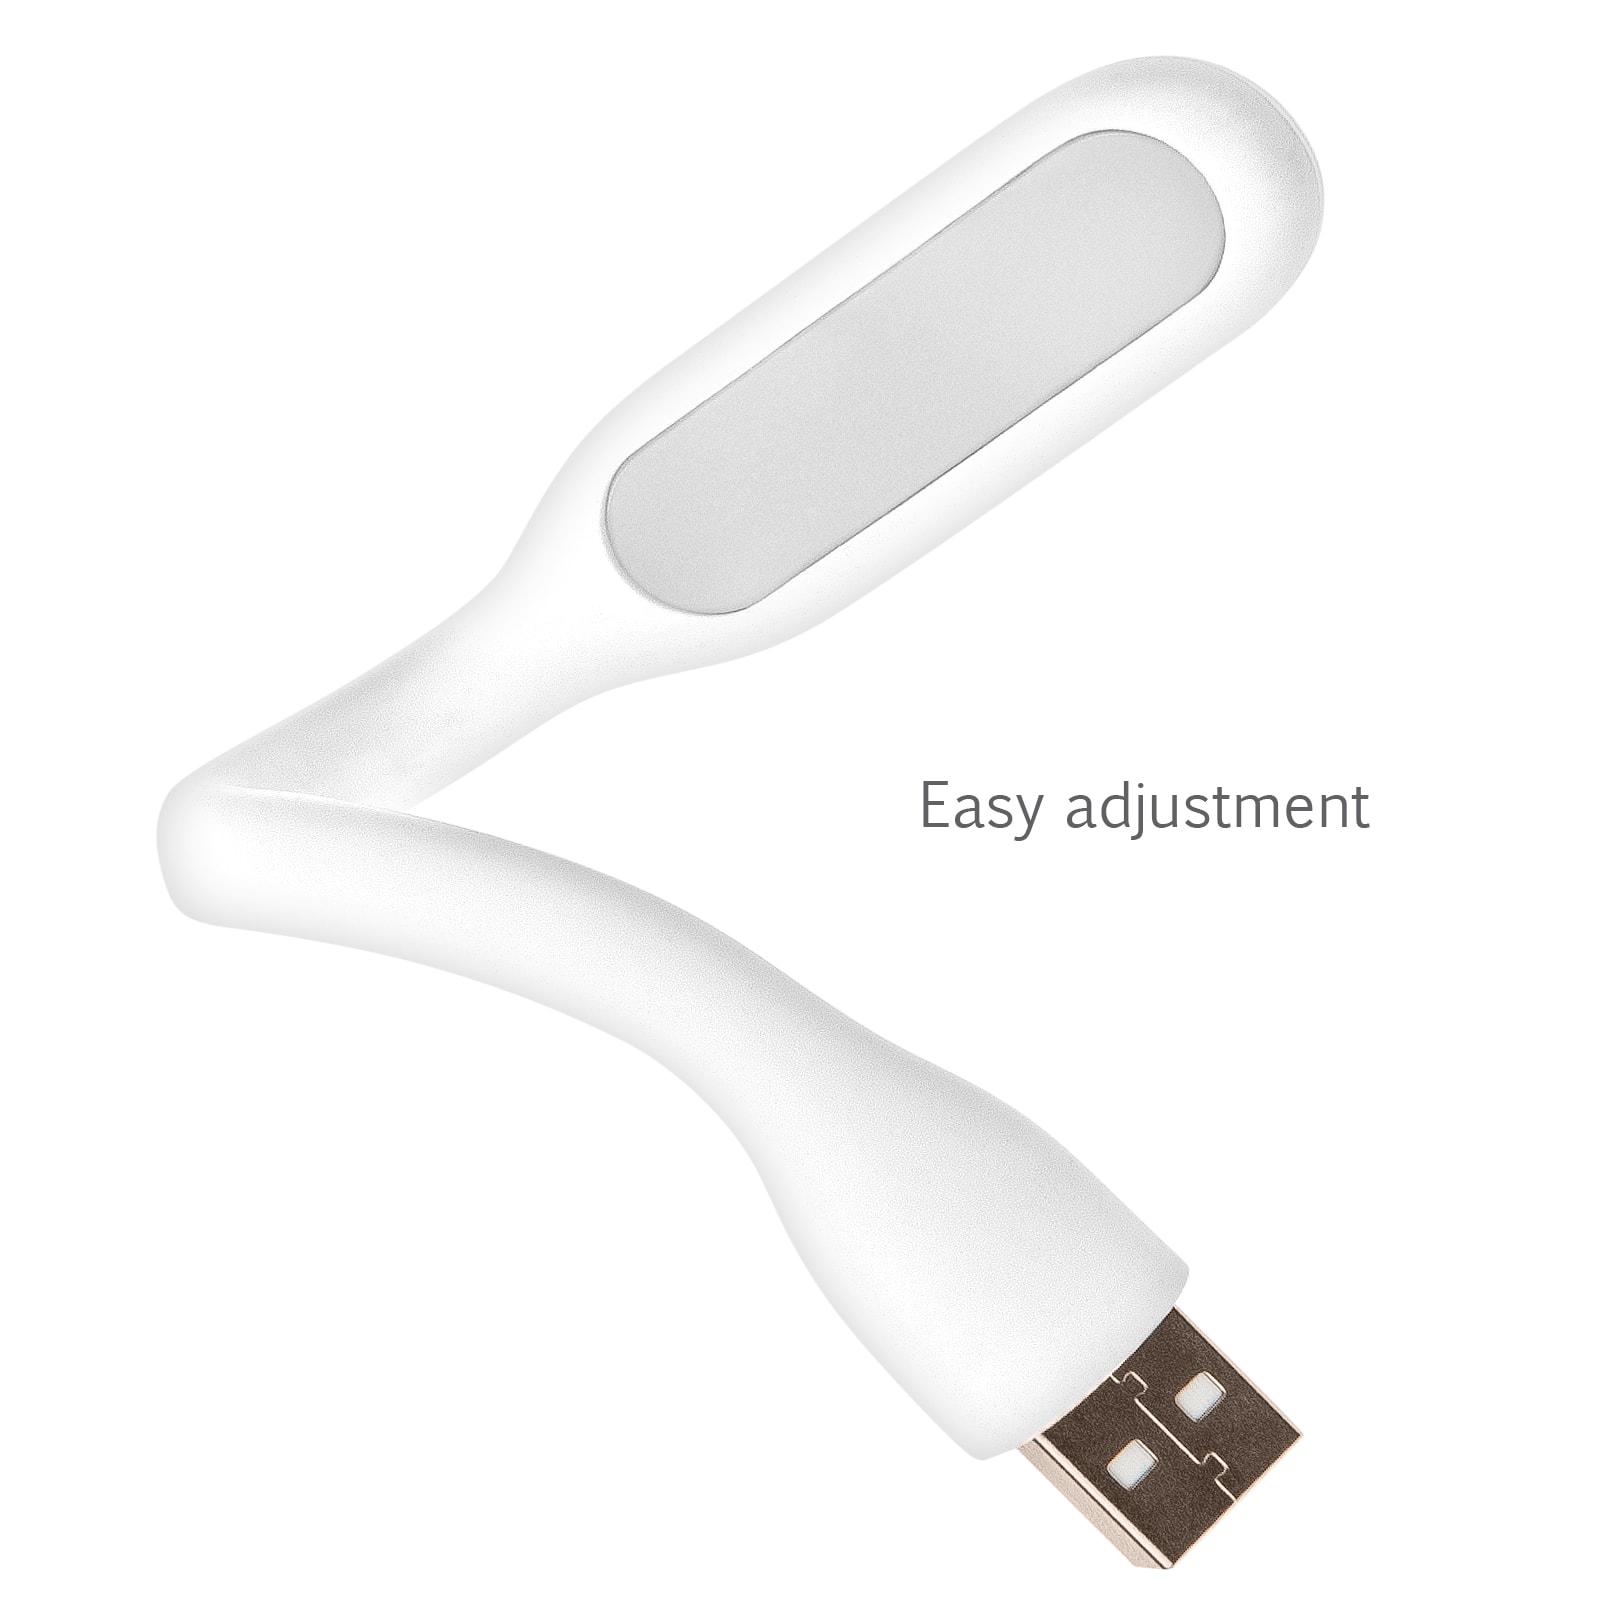 Flexible Portable Mini USB LED Light Lamp - Ledlam Lighting